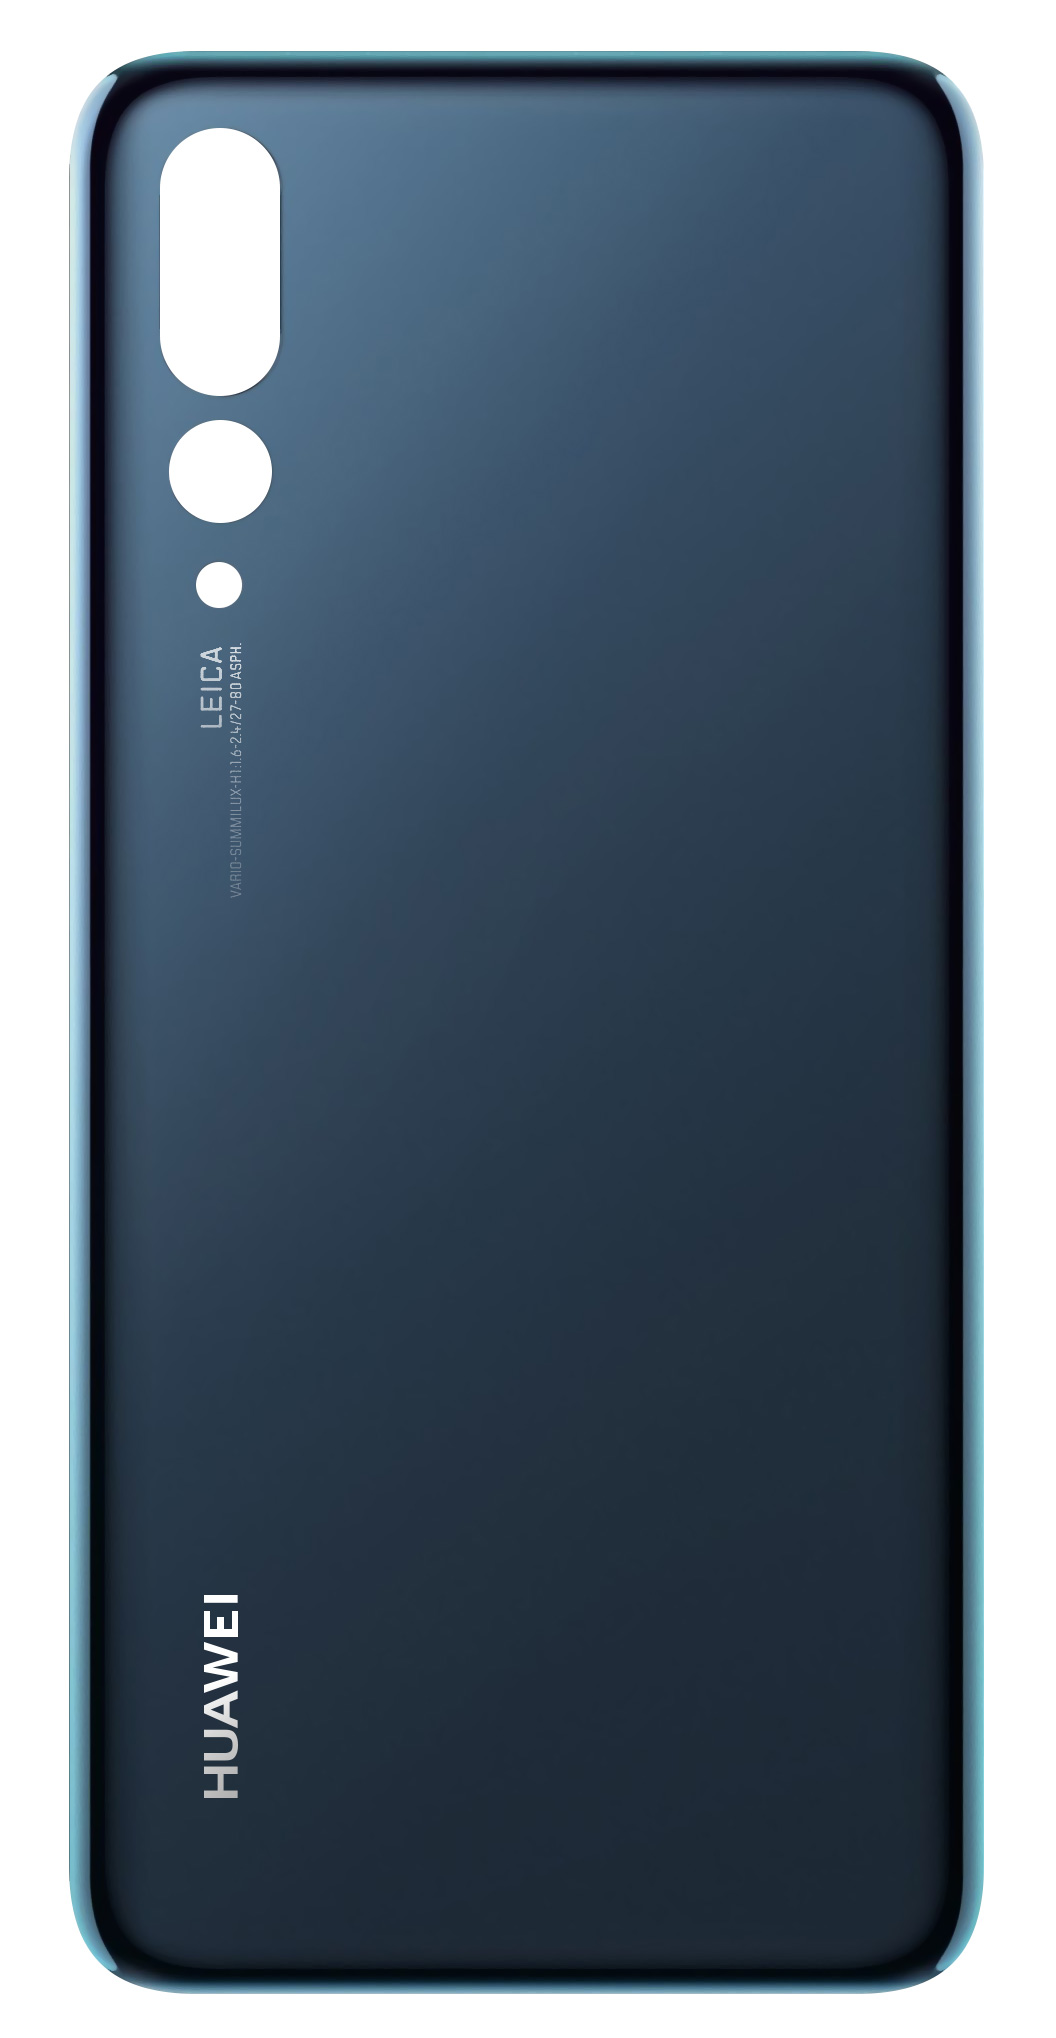 capac-baterie-huawei-p20-pro-2C-albastru